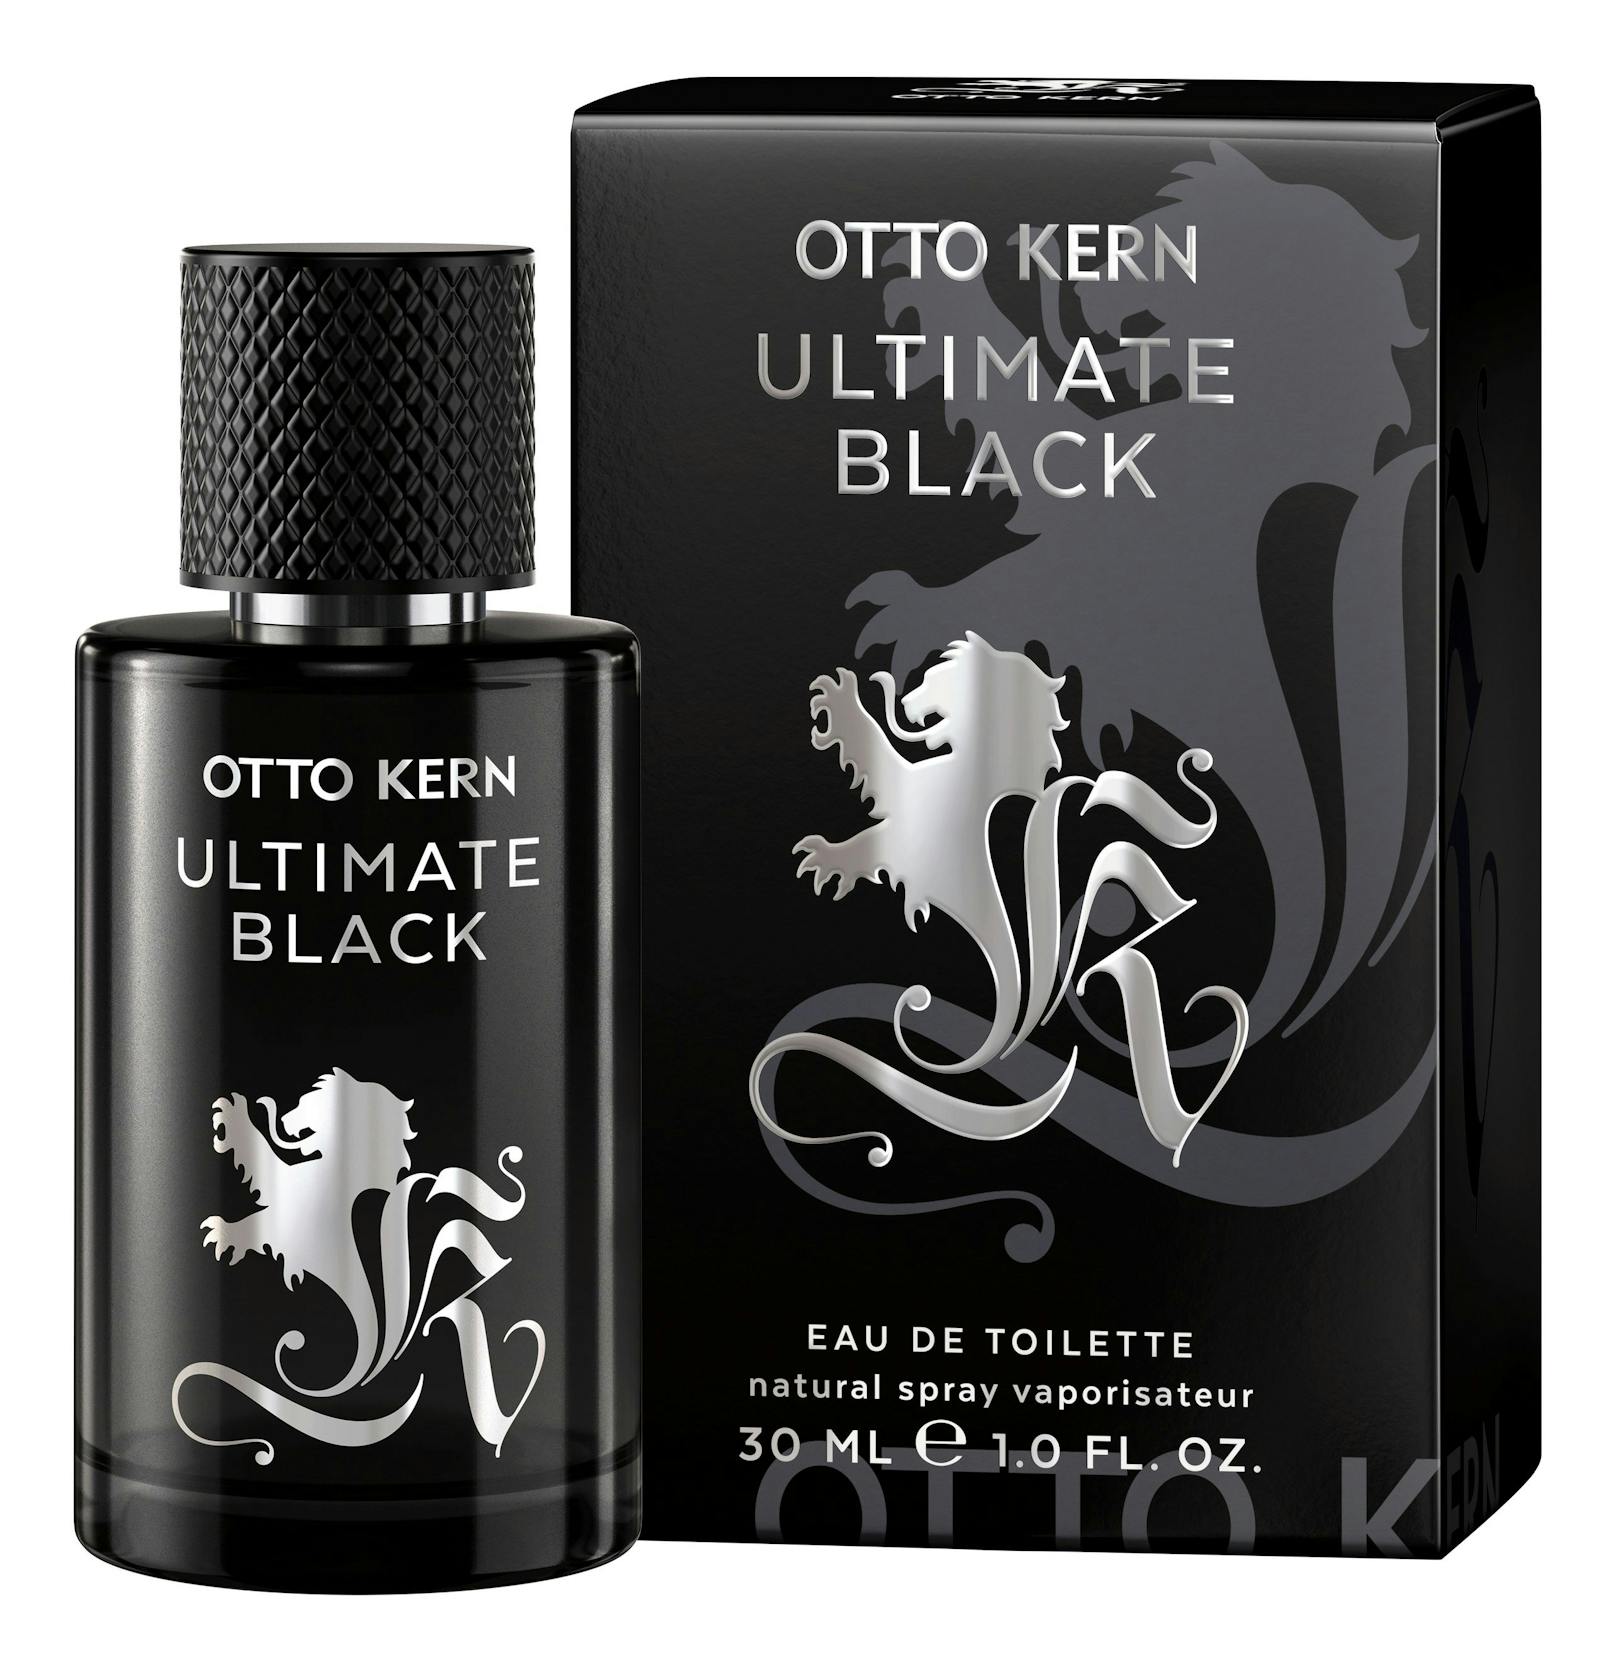 Das Design von Otto Kern Ultimate Black ist passend zum Namen in Schwarz gehalten. 